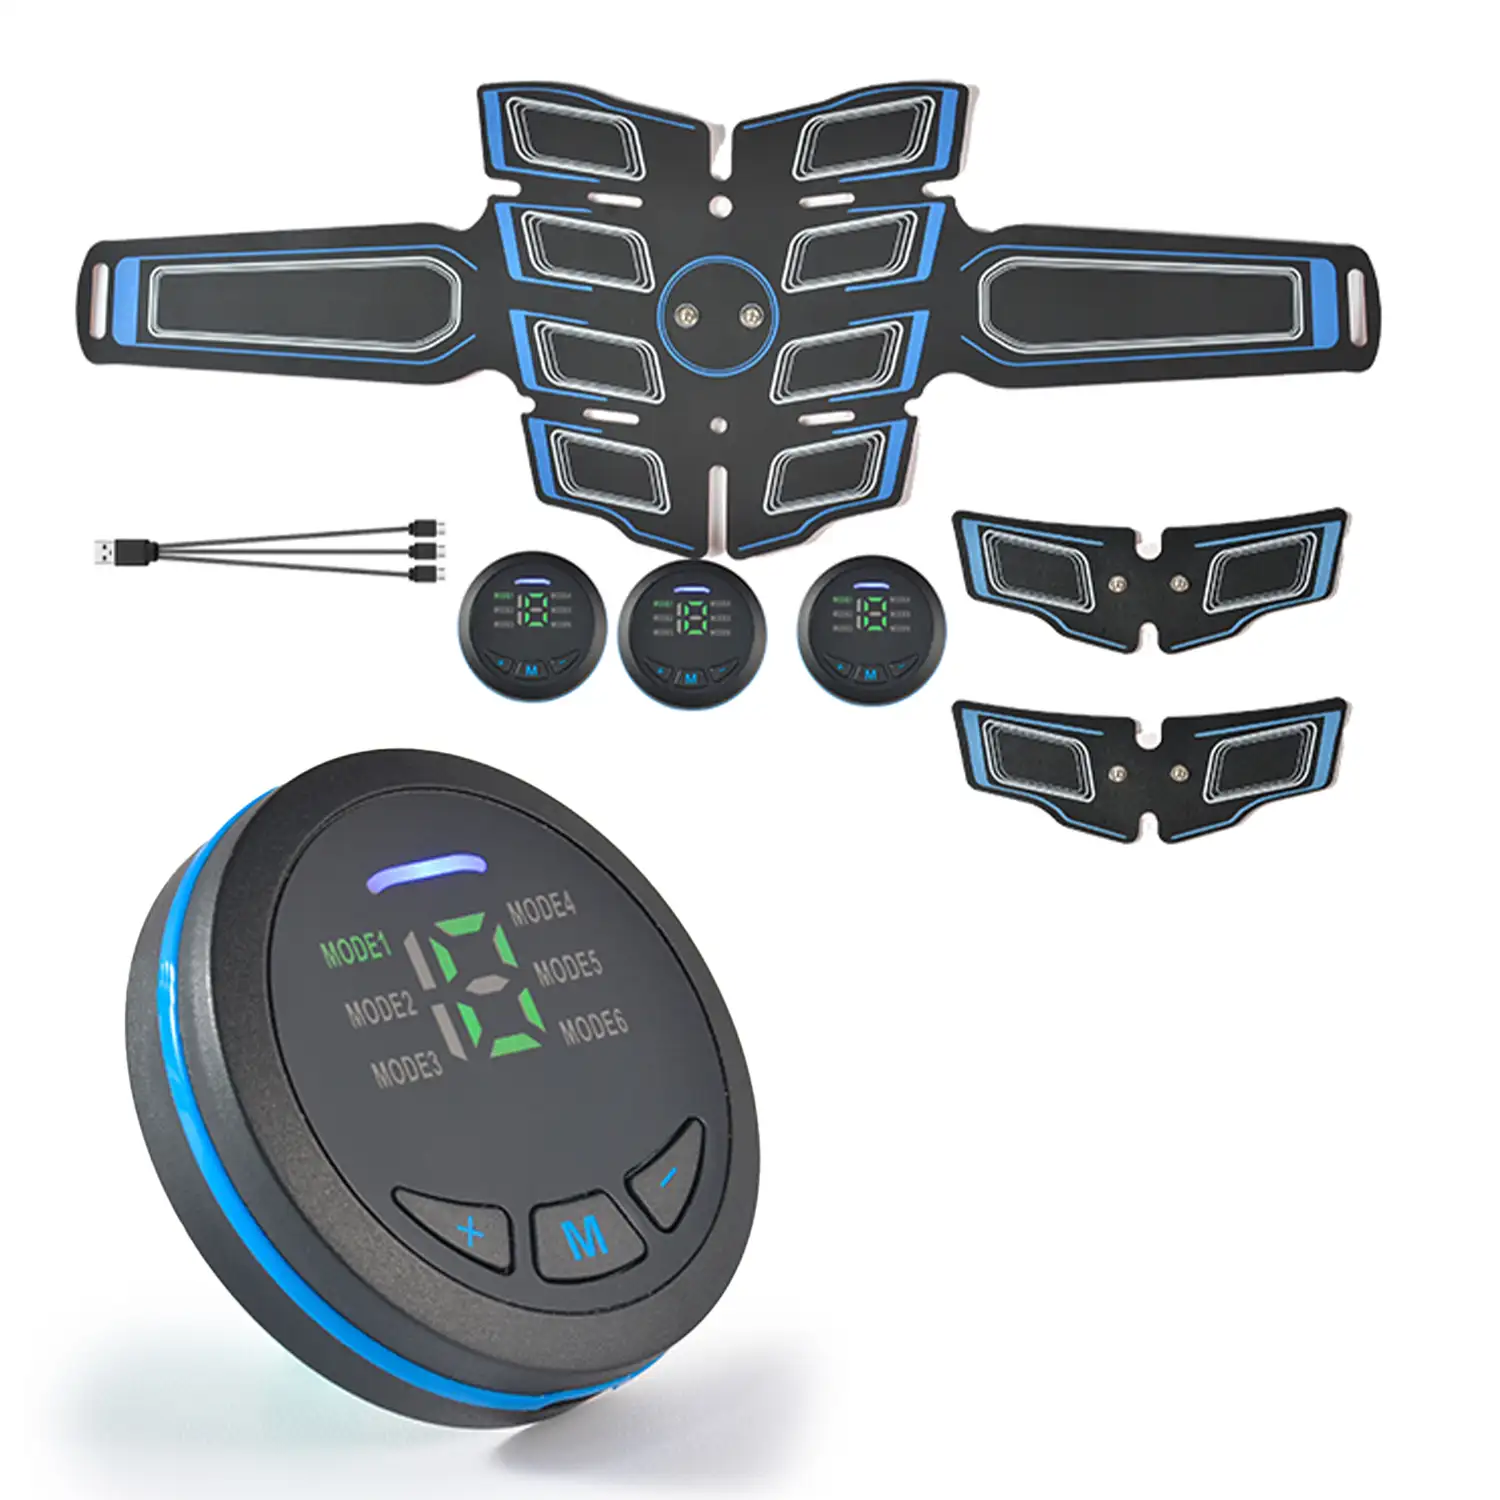 Cinturón electroestimulador muscular y de masaje EMS inteligente. Masajeador estimulador para abdominales, brazos/piernas. Batería recargable.